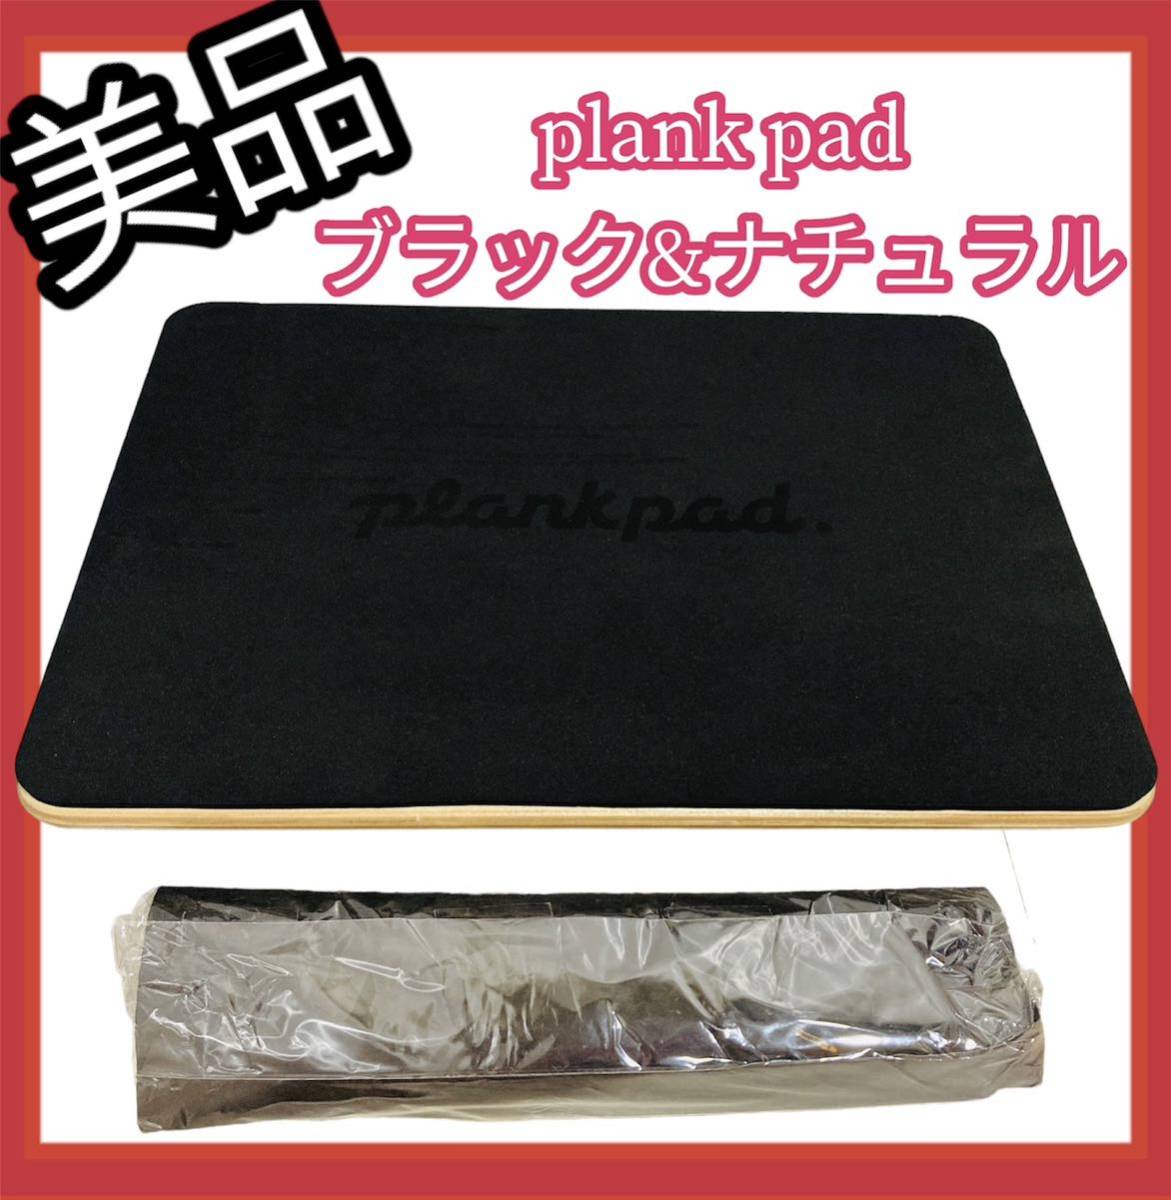 plank pad プランクパッド 美品!!